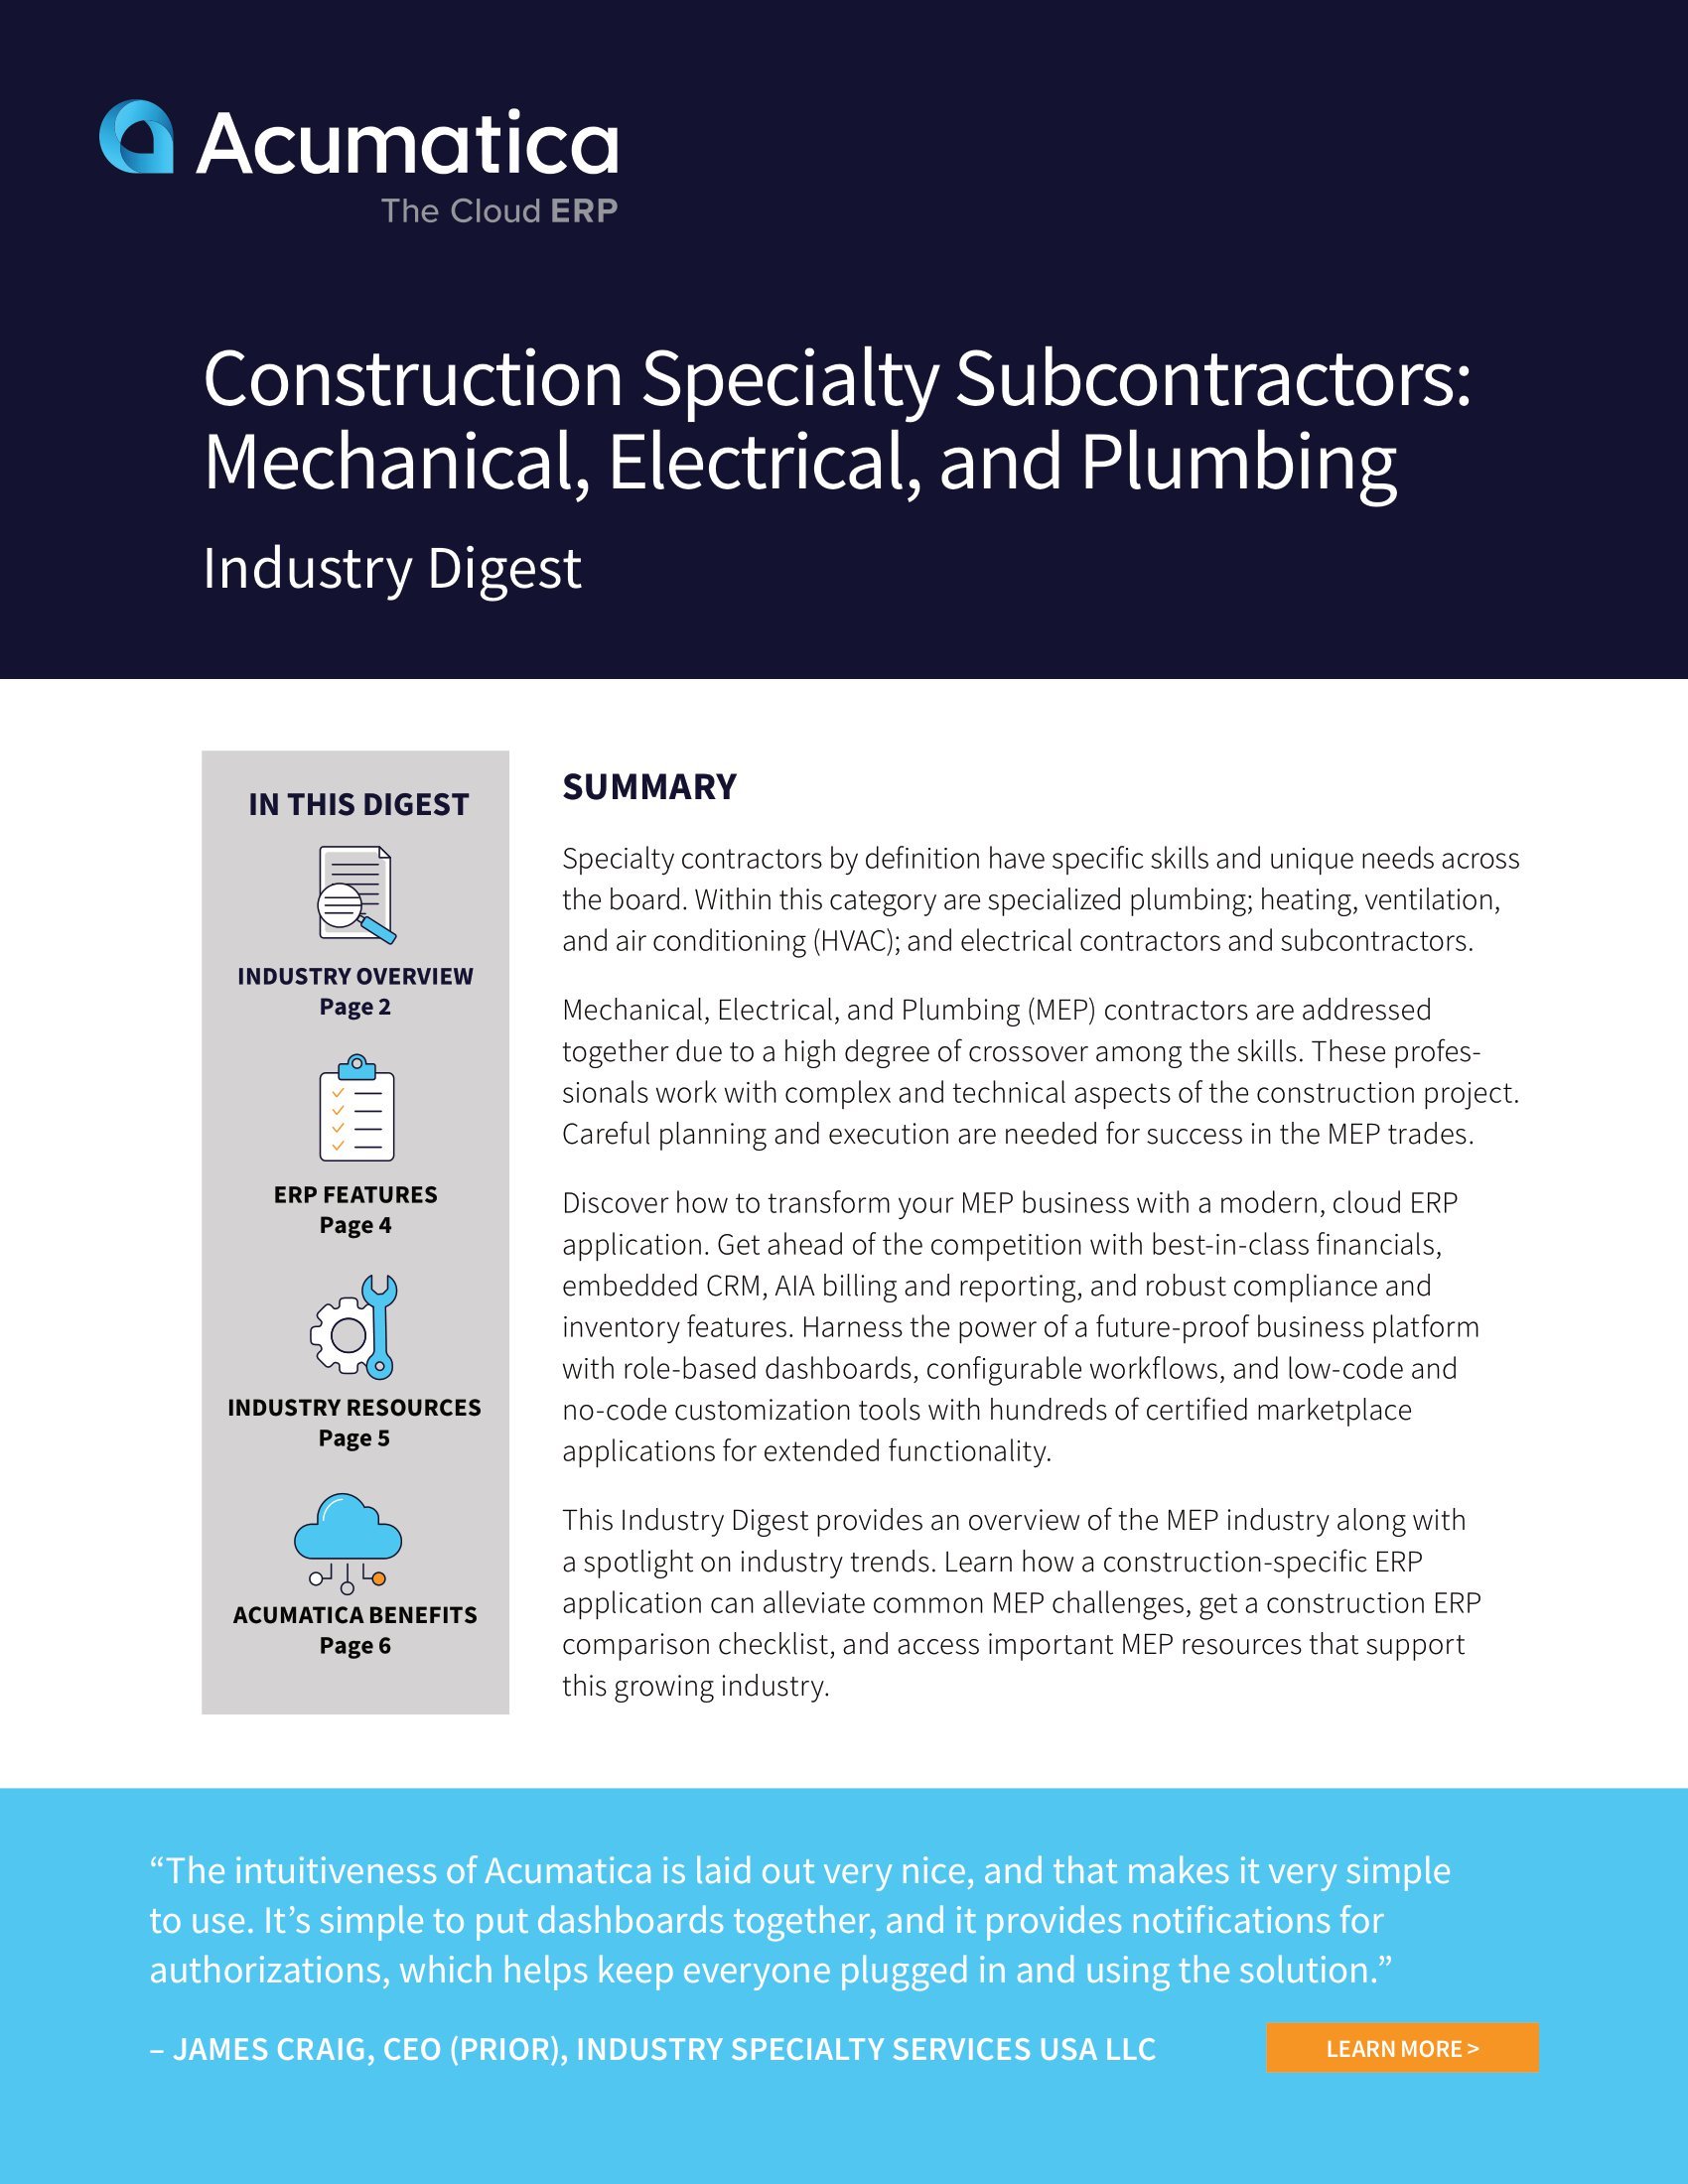 Por qué los contratistas especializados en mecánica, electricidad y fontanería (MEP) deberían implantar Acumatica Construction Edition